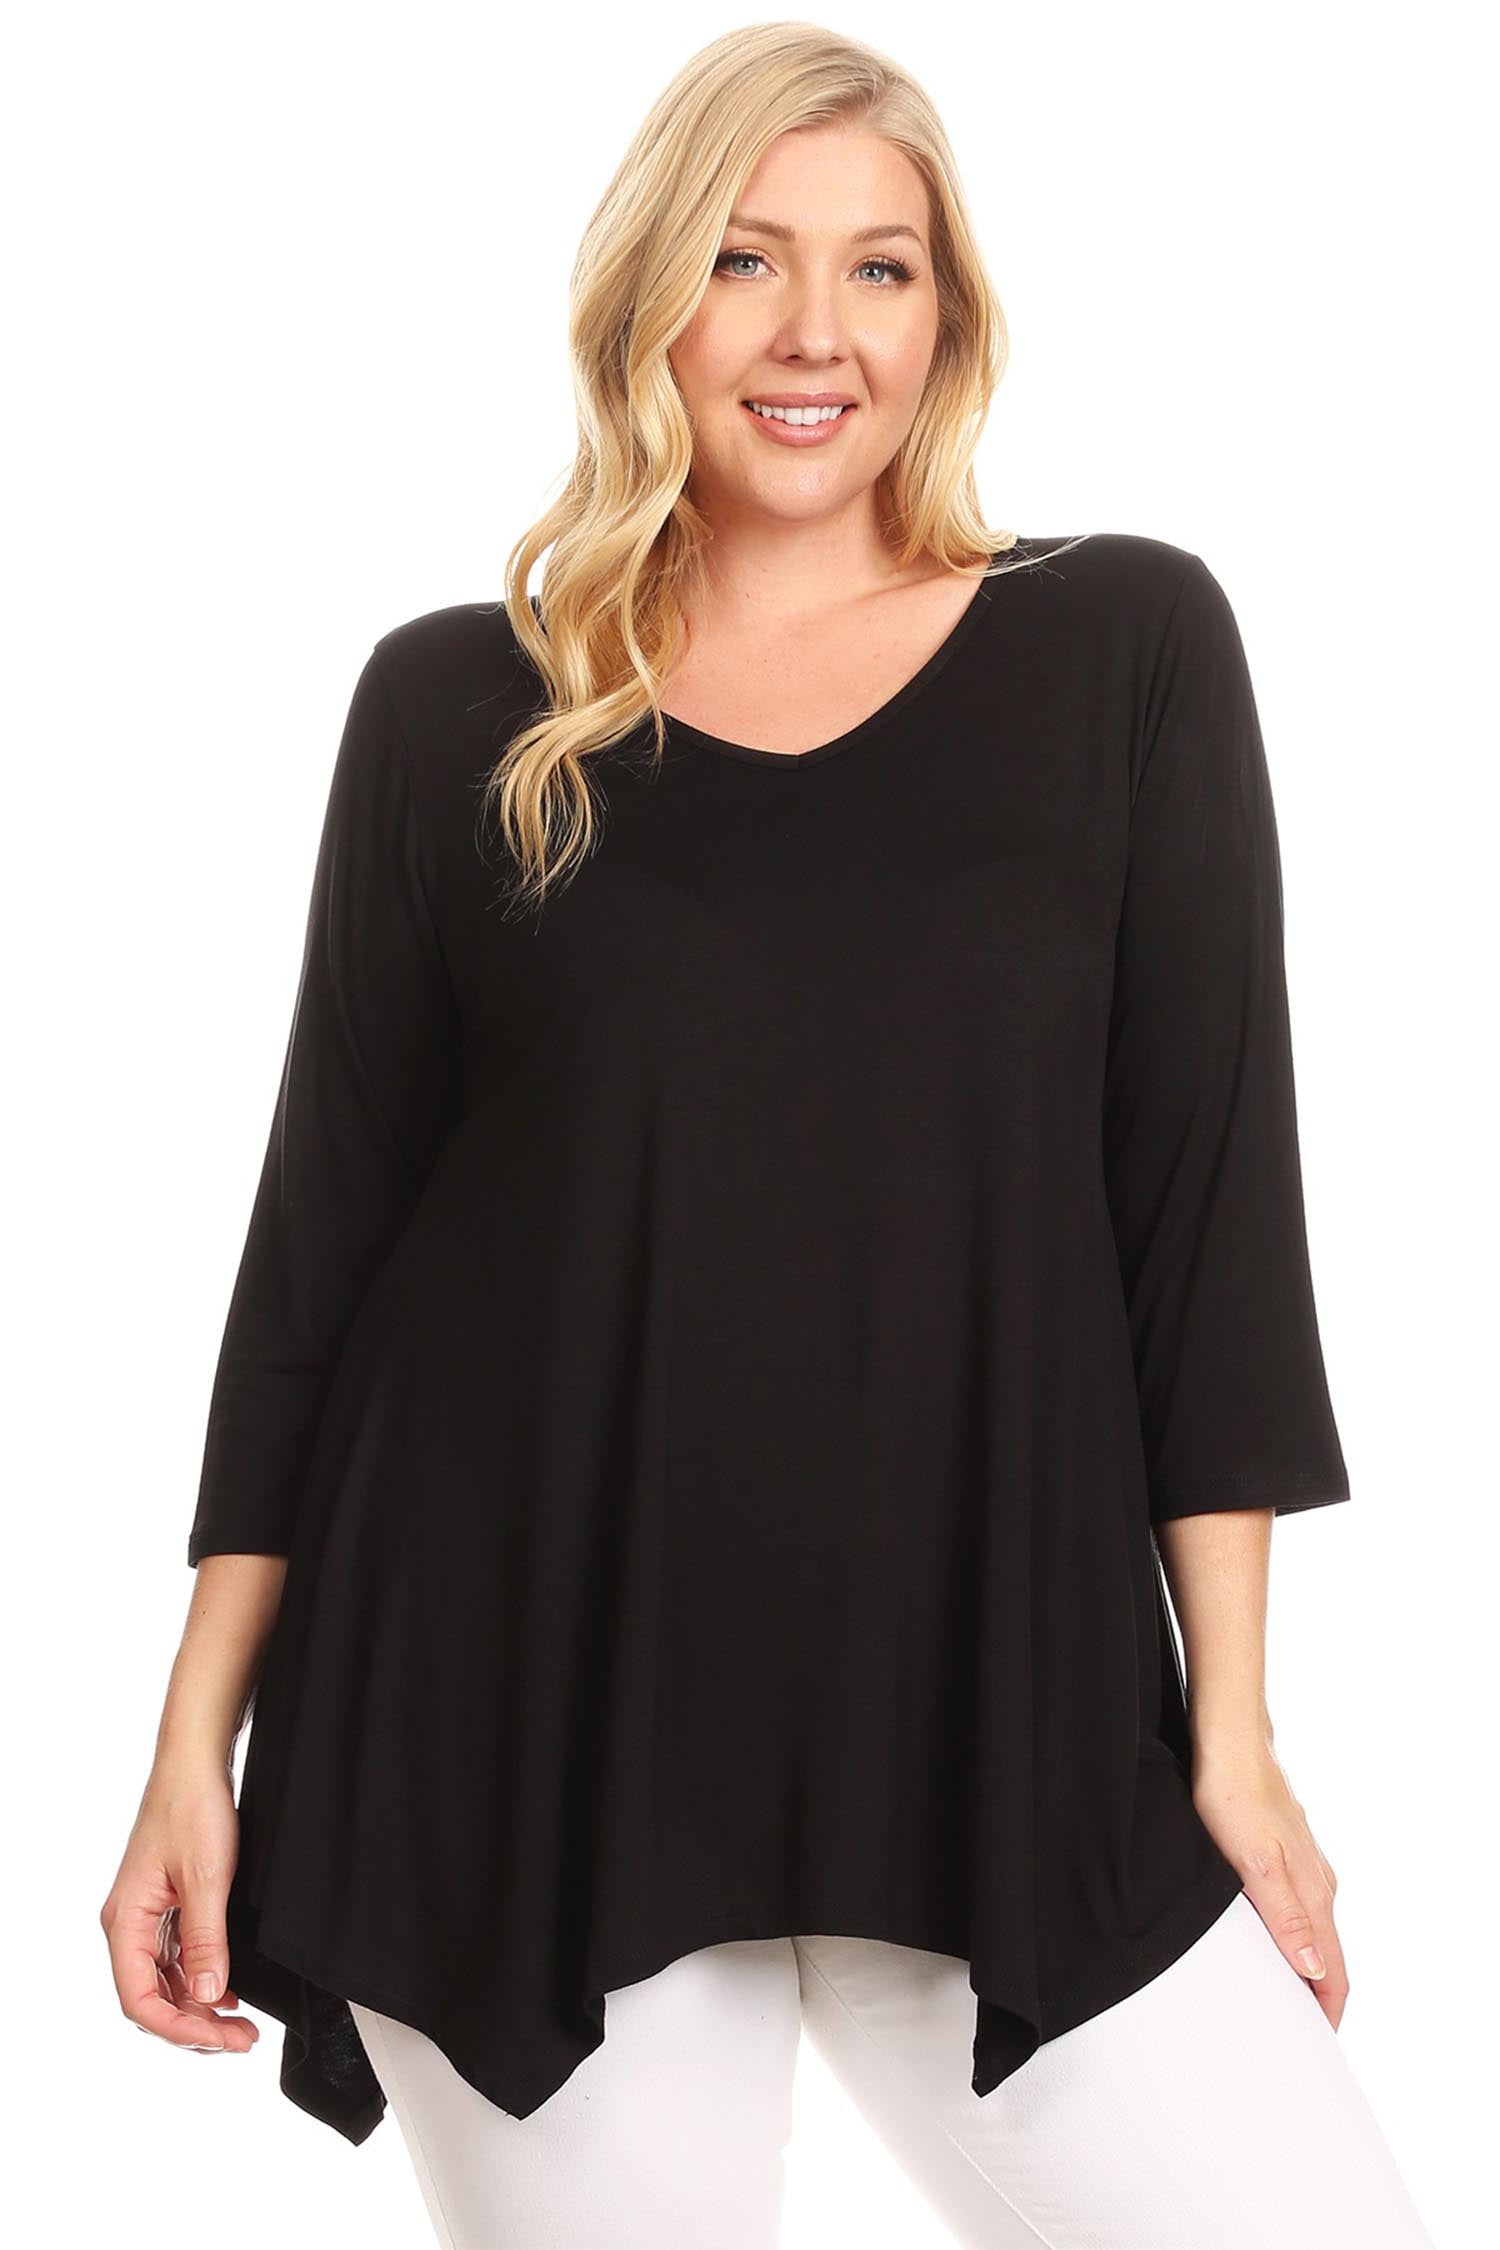 Women's Plus Size Solid Color Tunic - Walmart.com